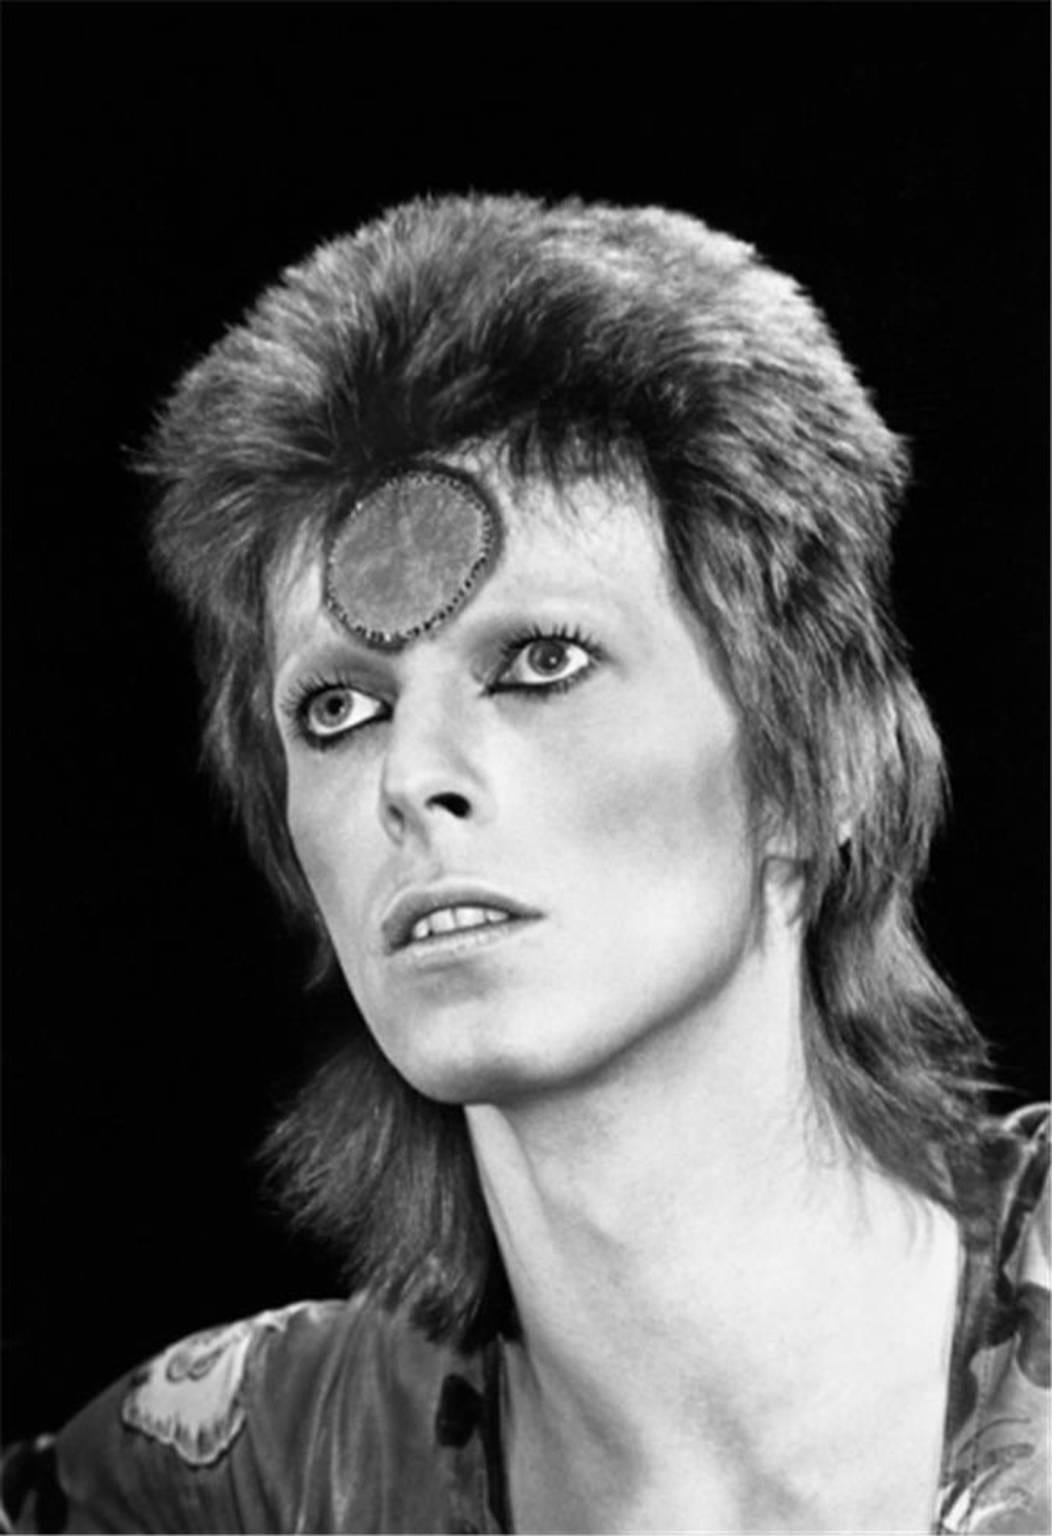 Mick Rock Black and White Photograph - David Bowie Portrait